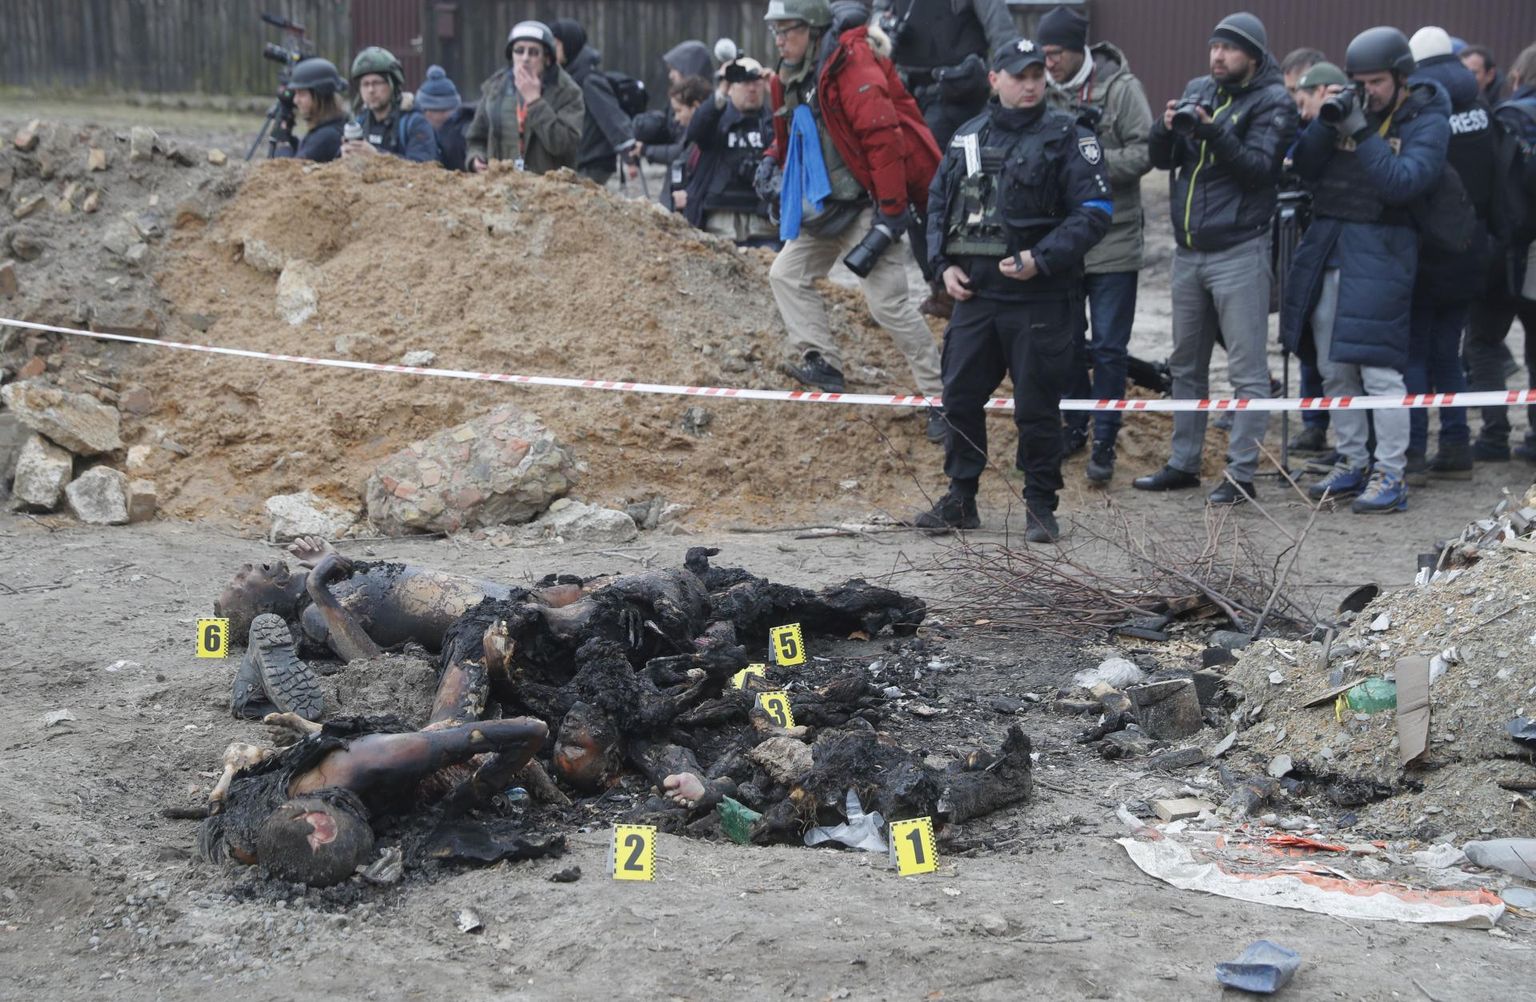 Vene väed üritasid kuritegude varjamiseks surnukehad ära põletada. Fotol on kuus Butšas tapetut: kaks meest, kolm naist ja üks laps, kes kõik põlema süüdati.
 